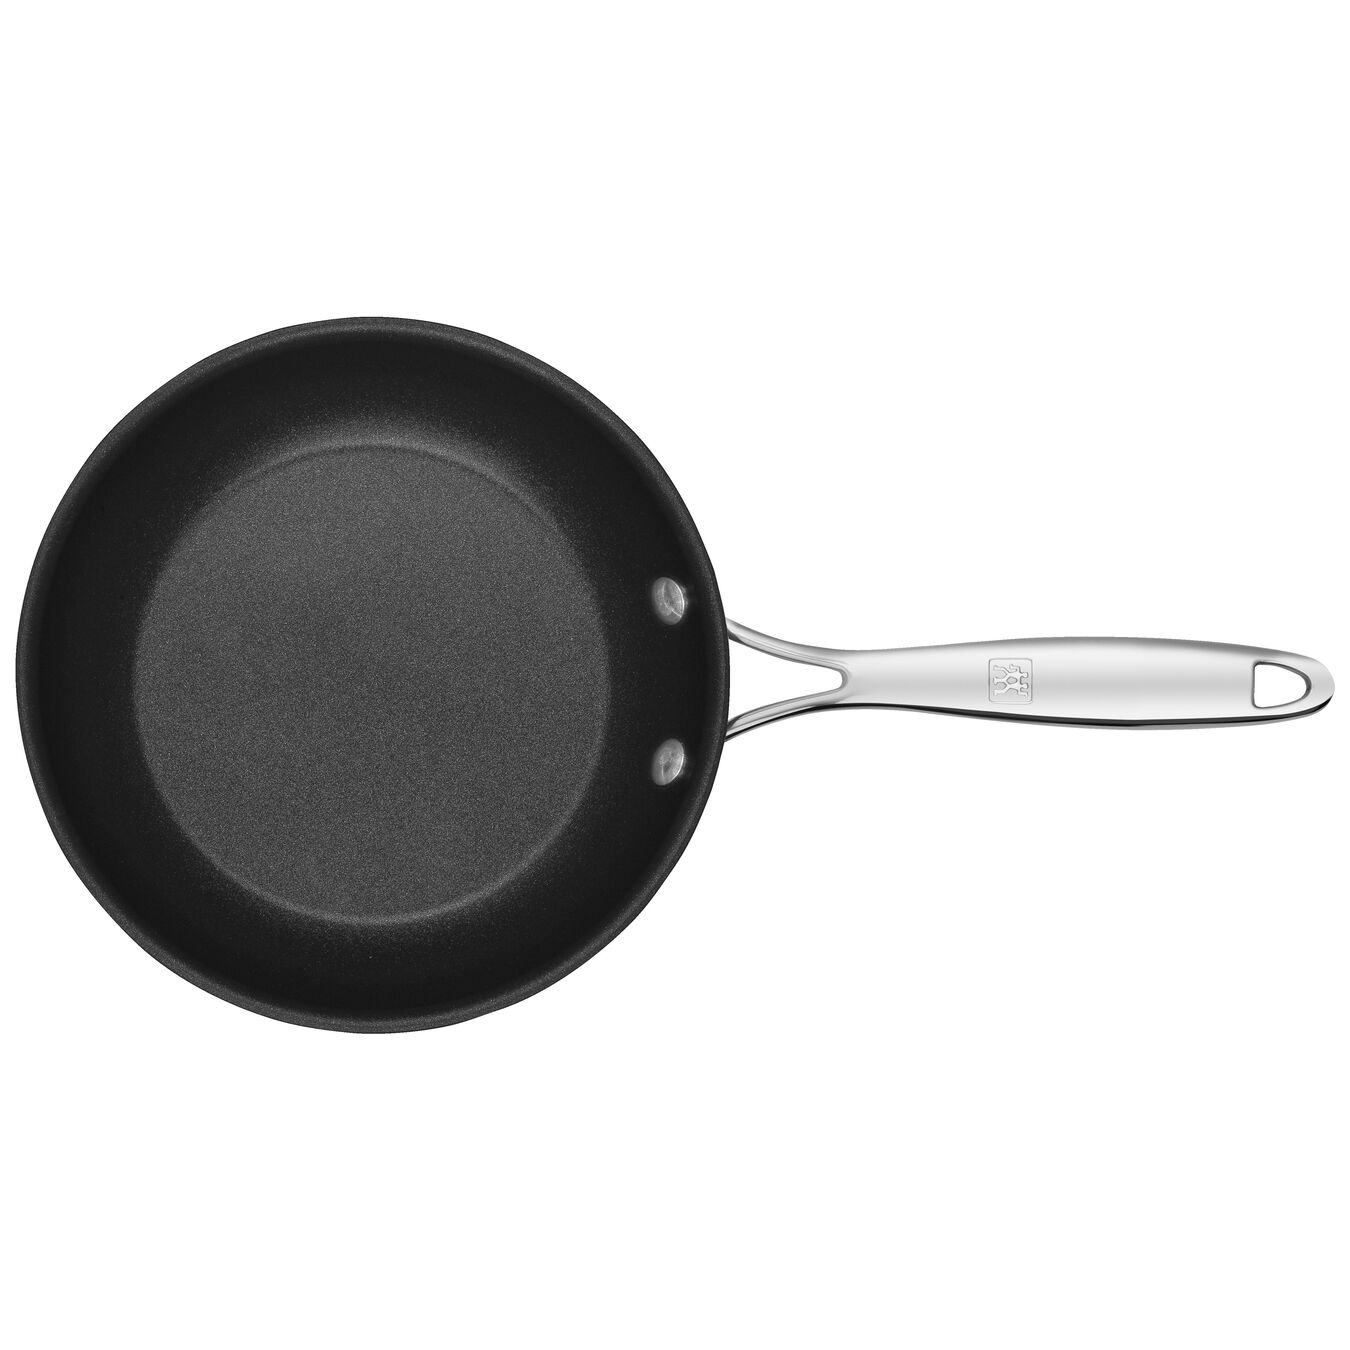 20 cm Aluminium Frying pan black,,large 4